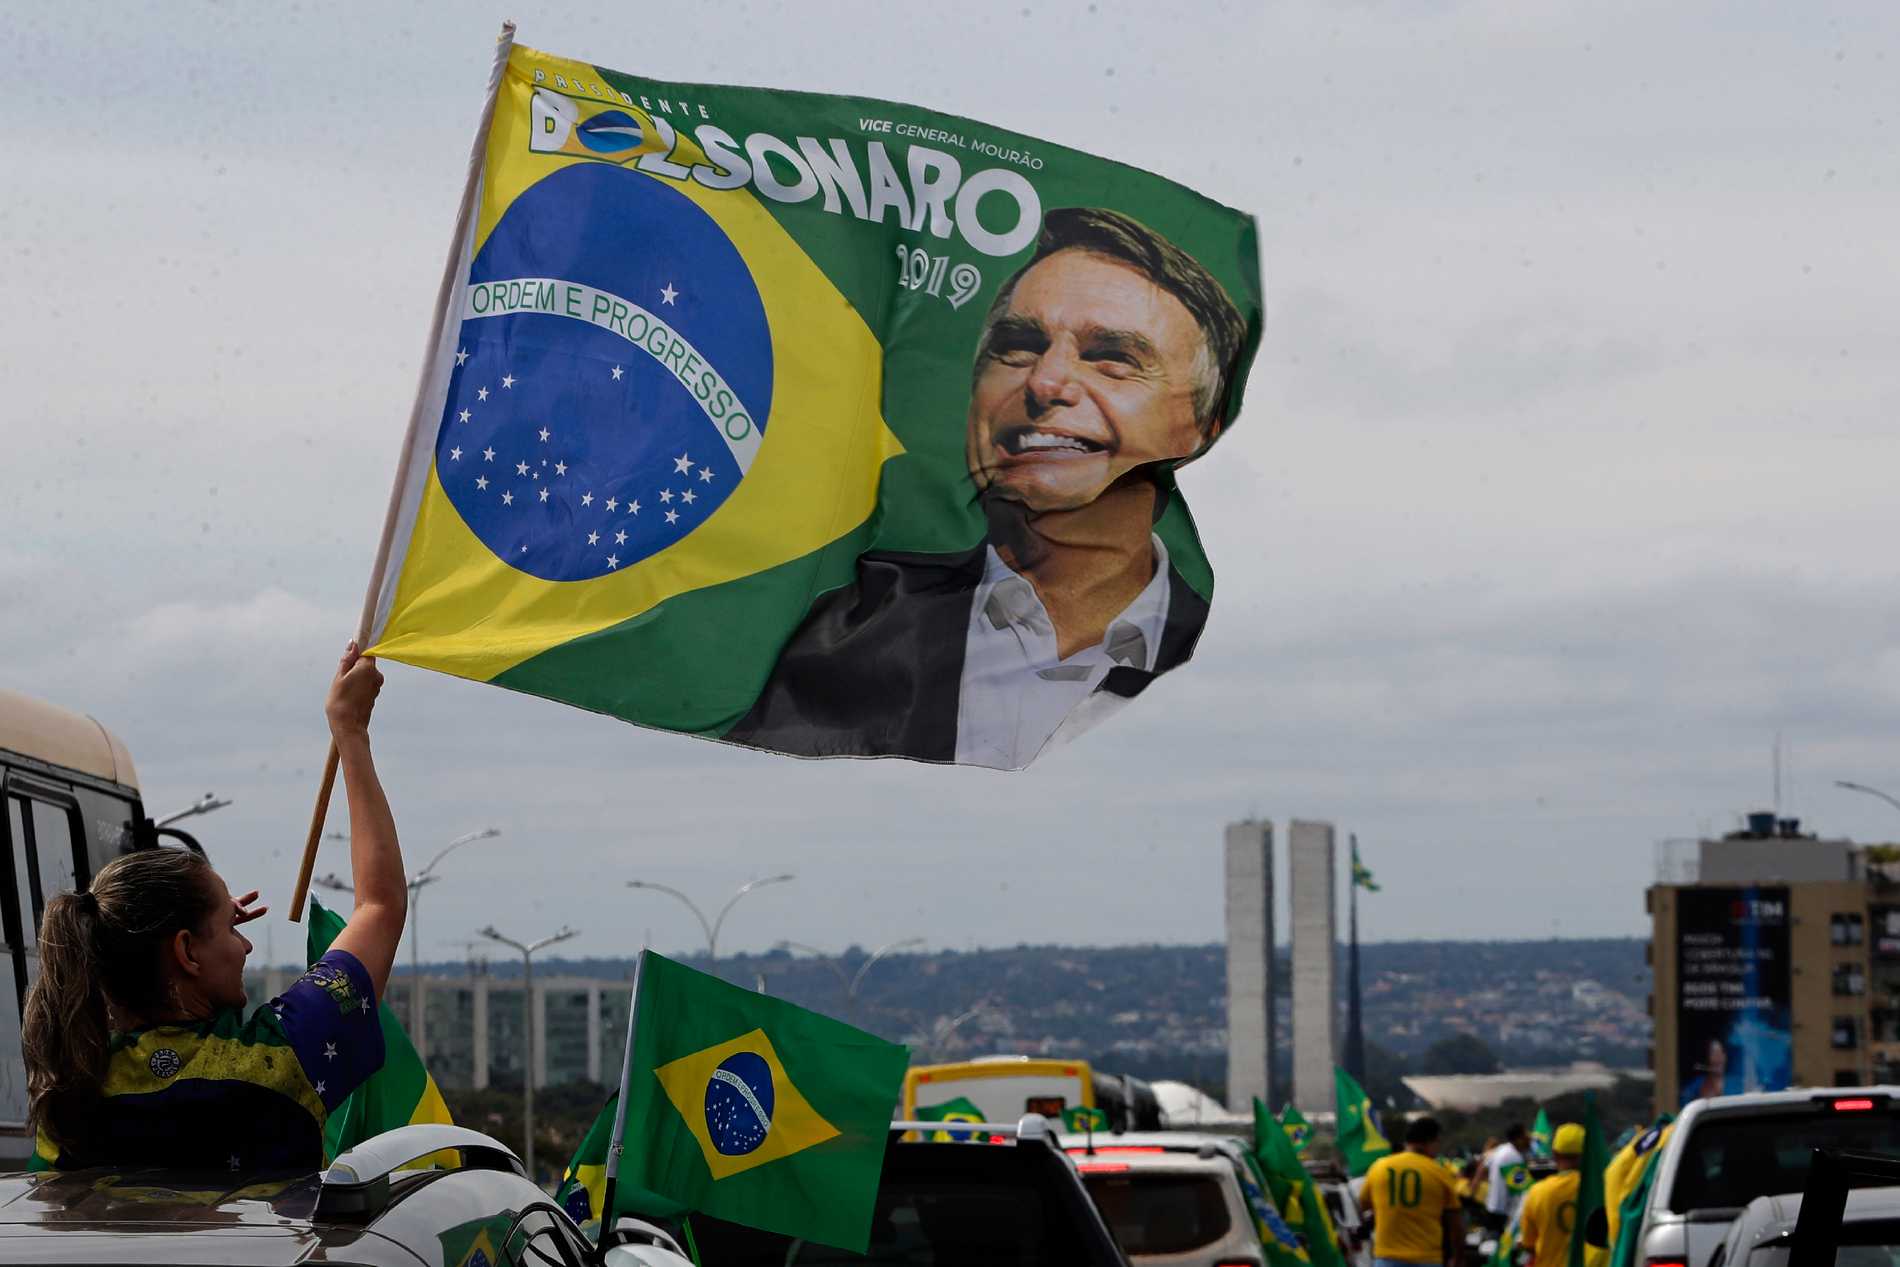 Tusentals i demonstrationer för Bolsonaro